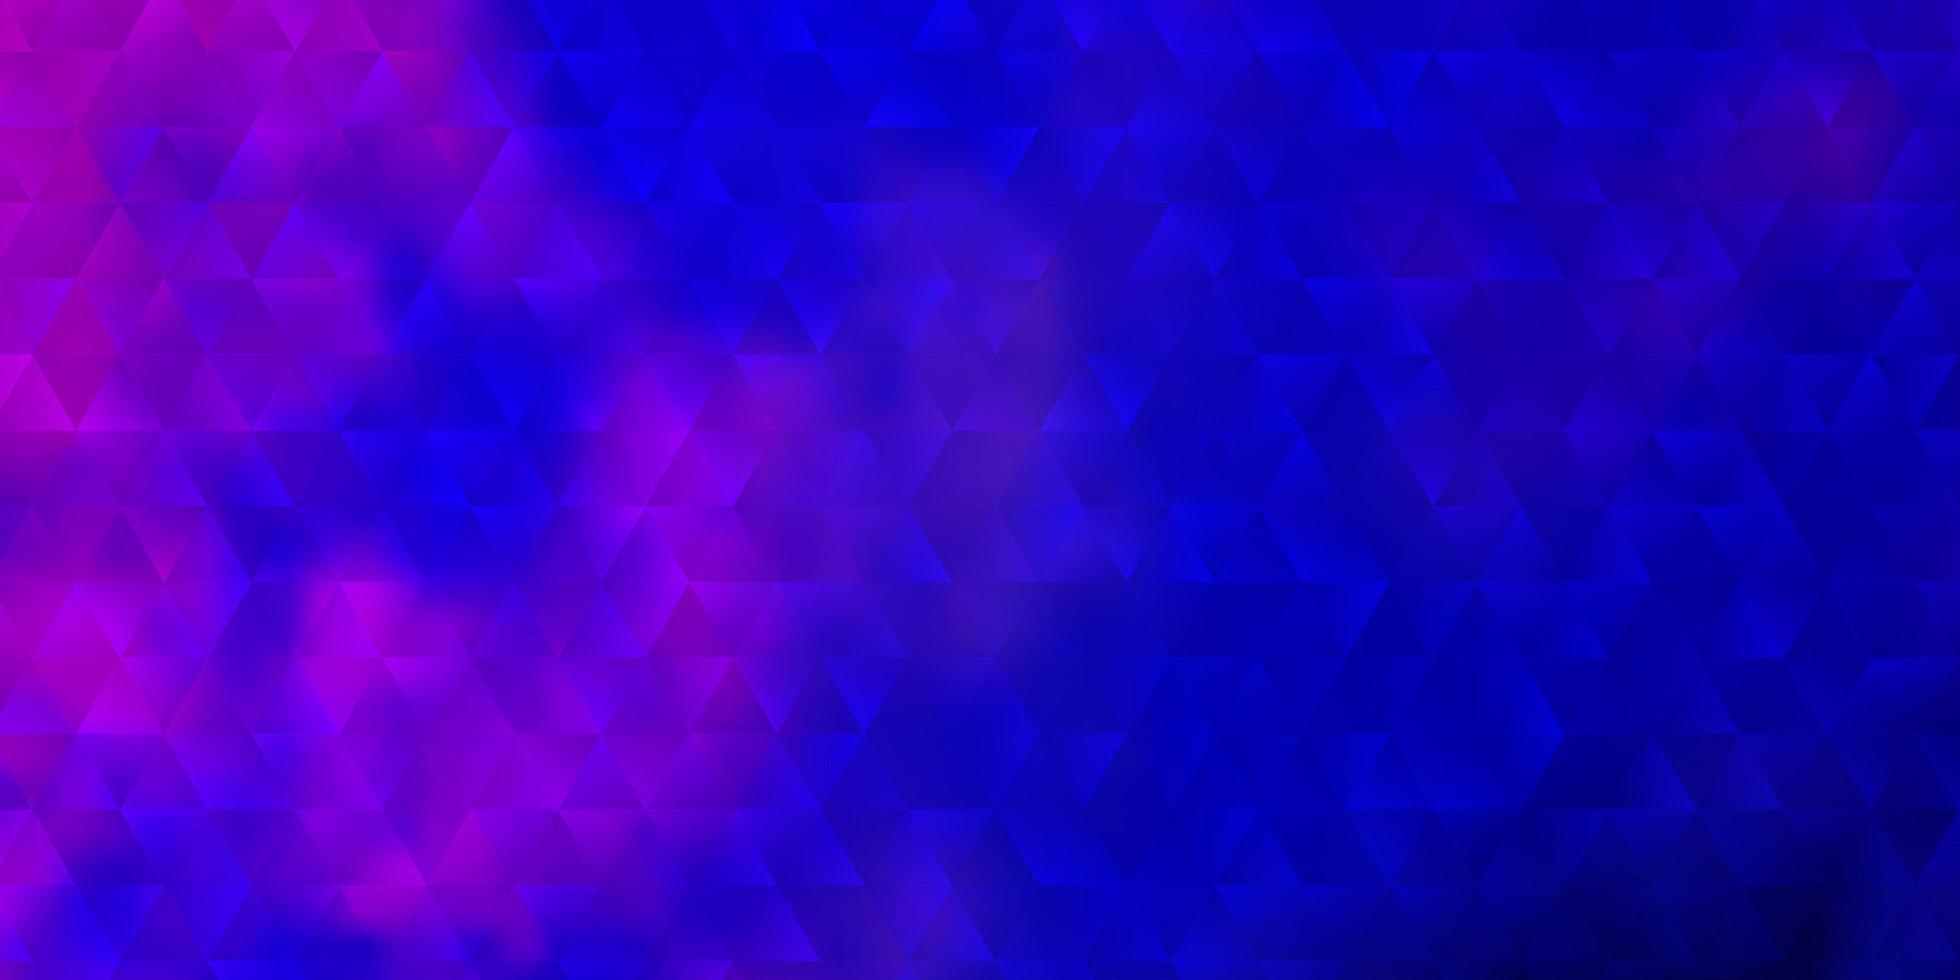 mörkrosa, blå vektorbakgrund med trianglar. vektor